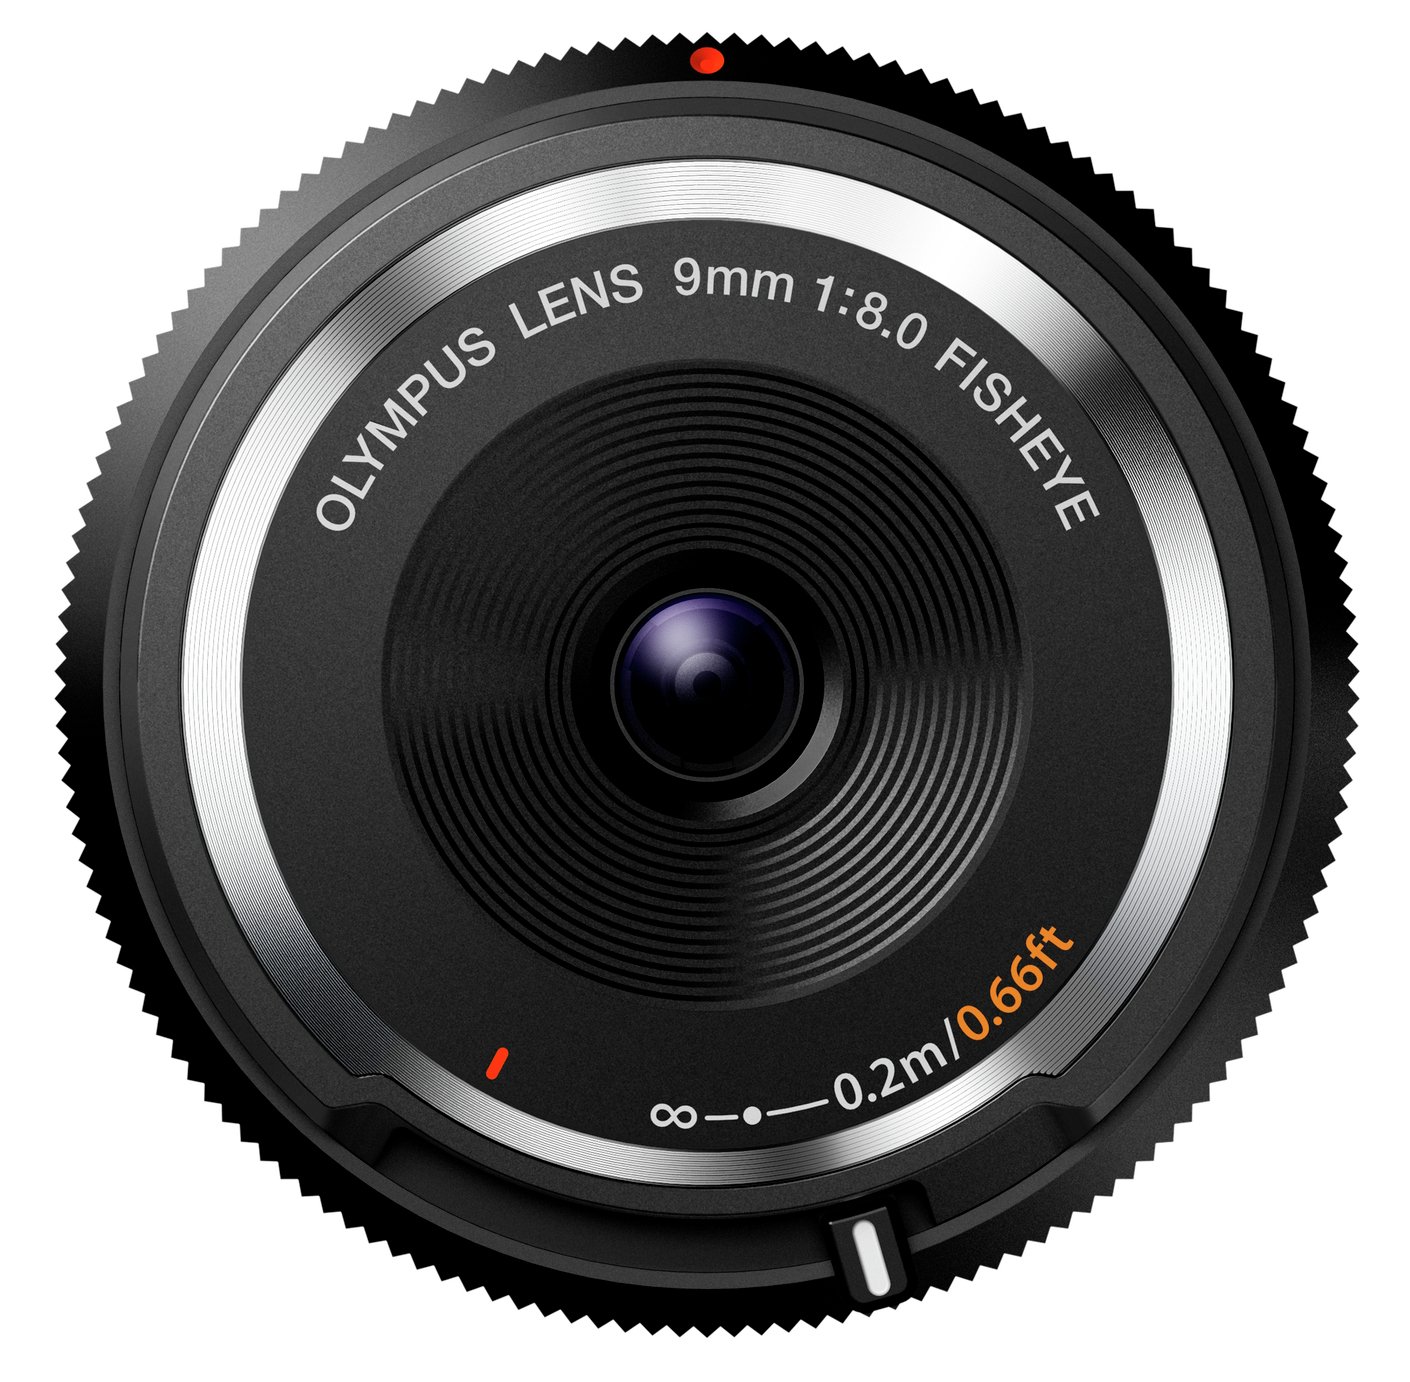 Olympus 9mm Fish Eye Body Cap Lens Review